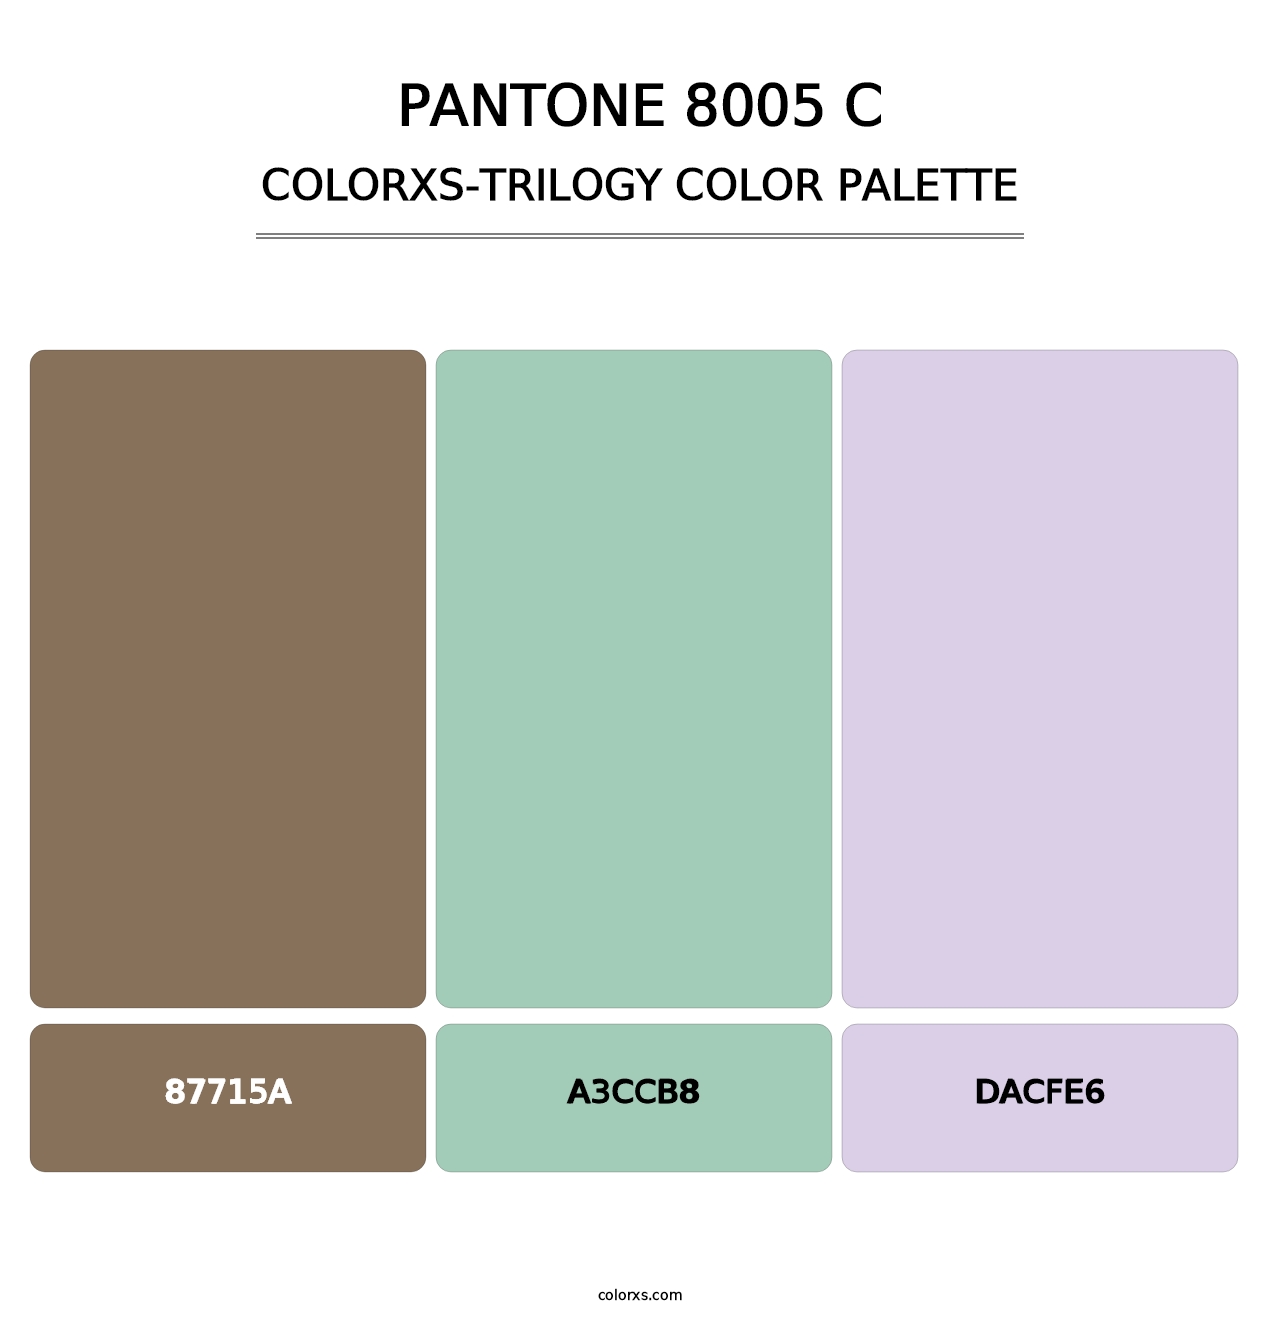 PANTONE 8005 C - Colorxs Trilogy Palette